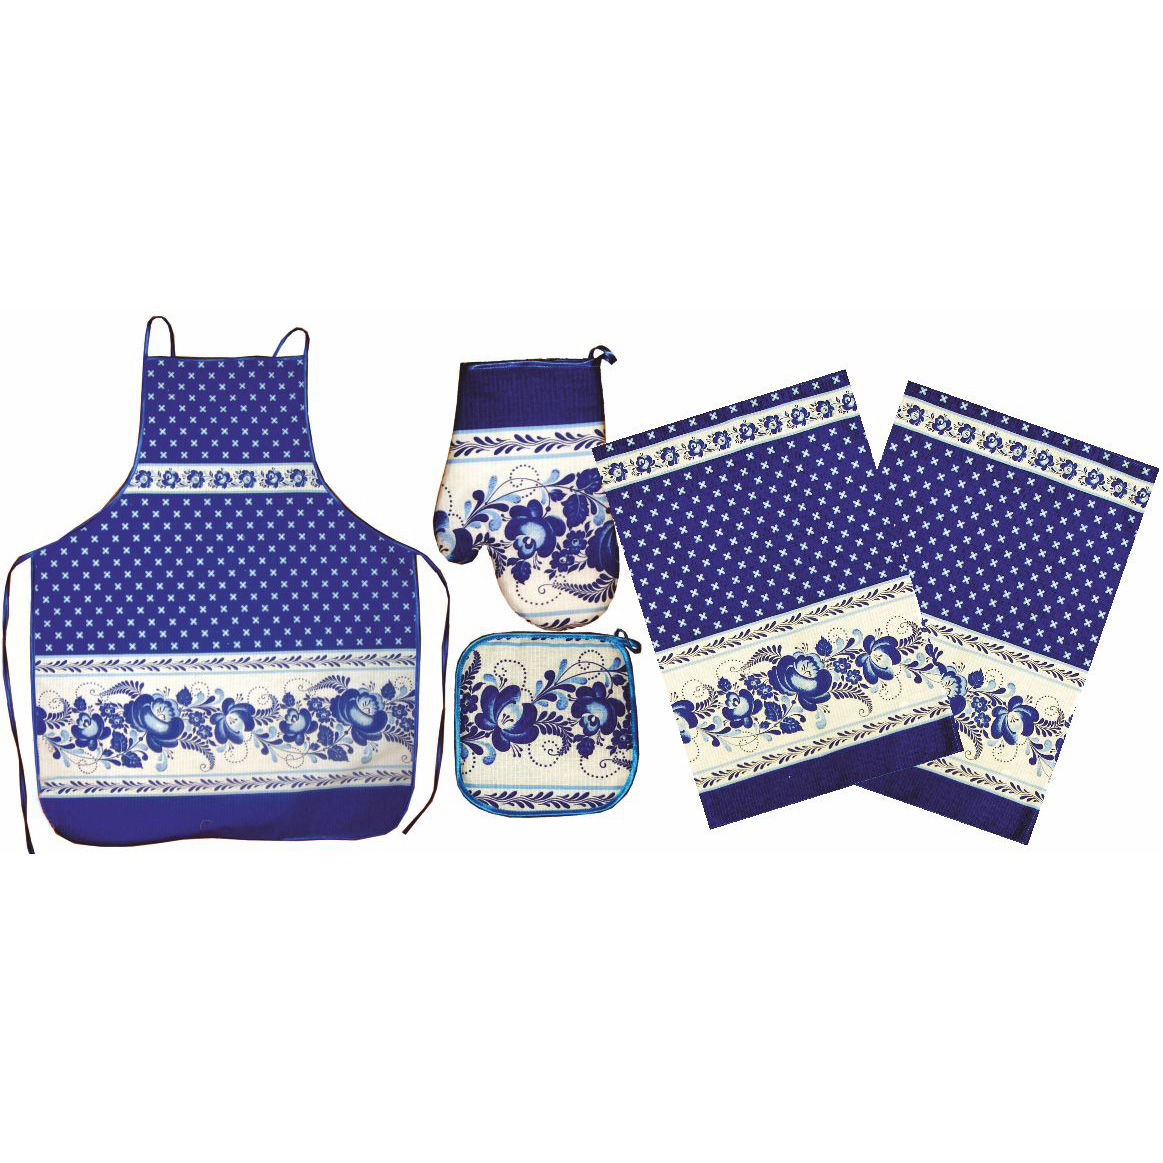 Kitchen Textile Gzhel Gift Set of 5 - Apron, Oven Mitt, Potholder, Two Kitchen Towels